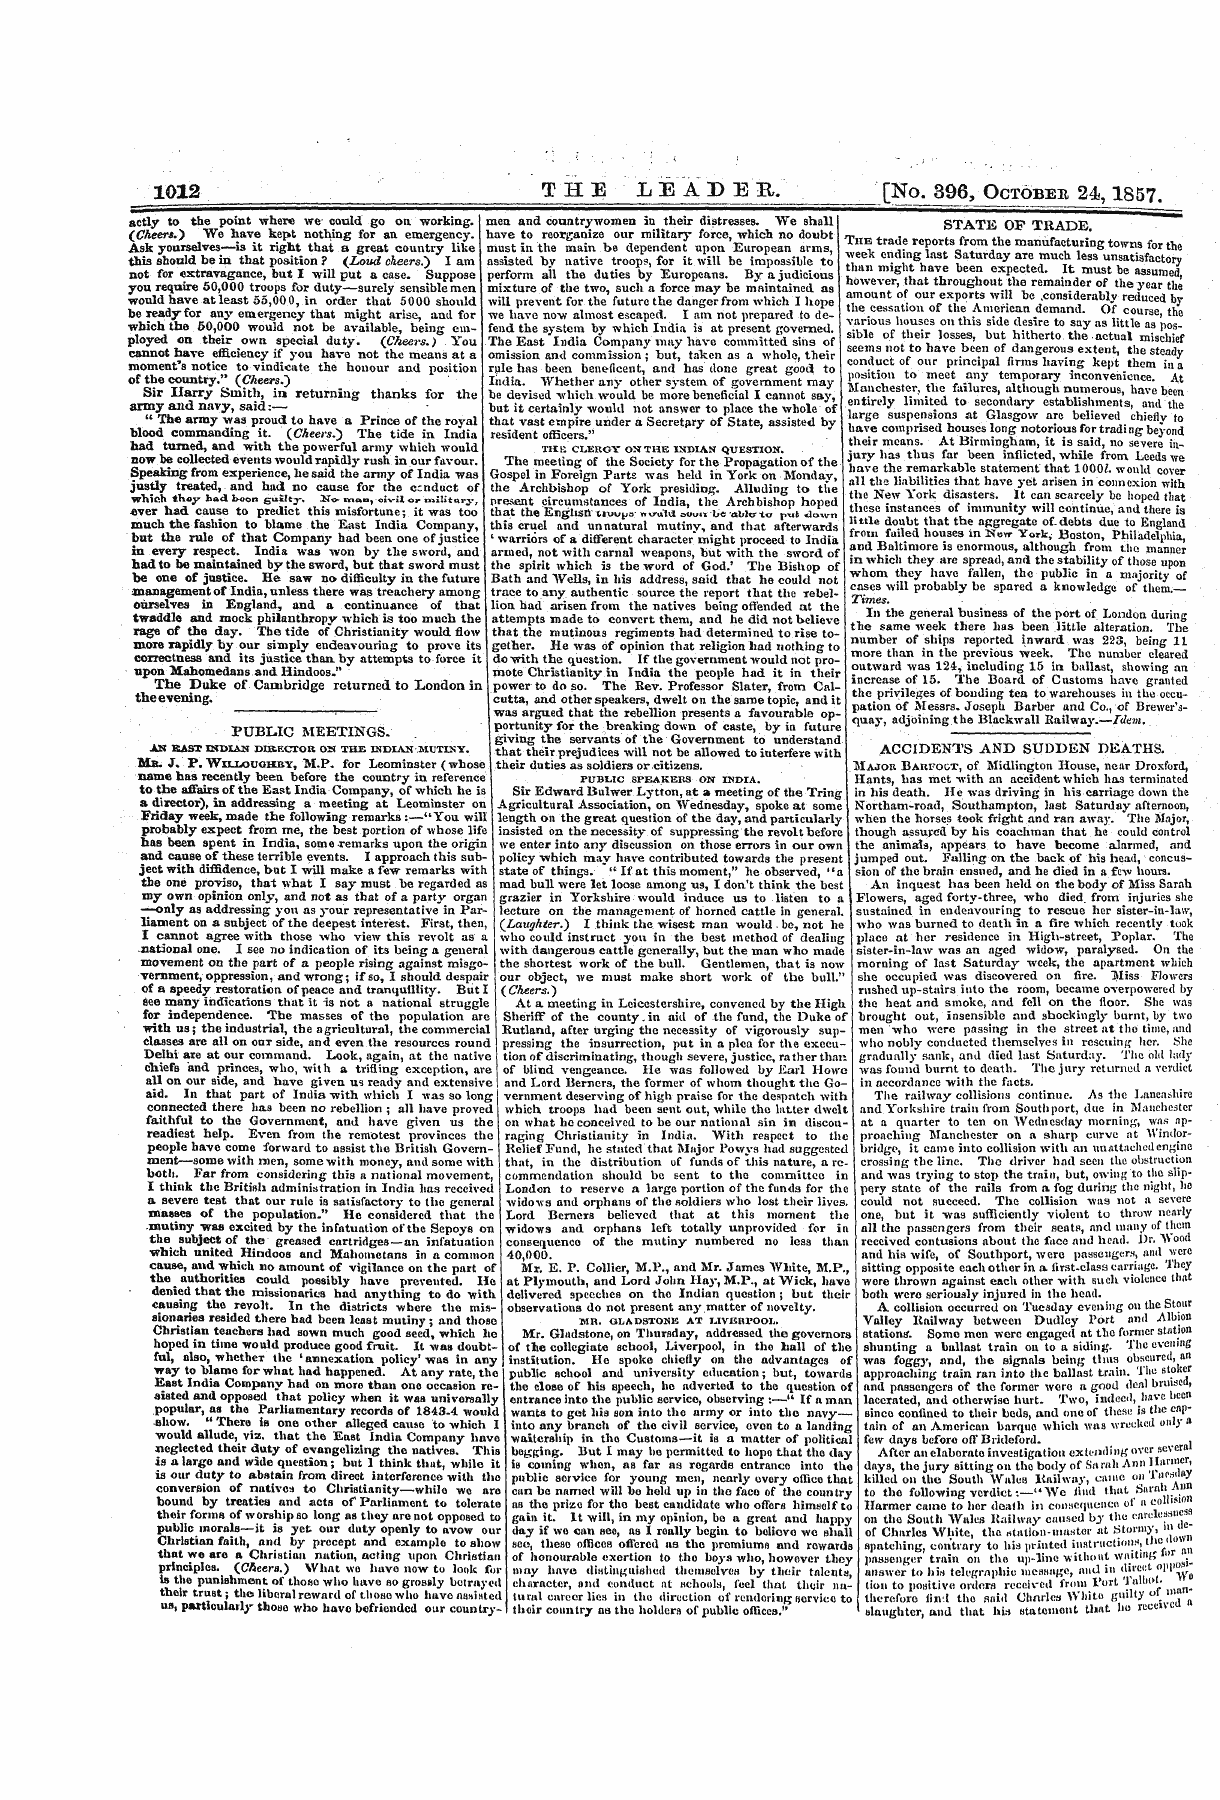 Leader (1850-1860): jS F Y, 2nd edition - 1012 The Leadeb, [No. 396, Octobee 24,18...